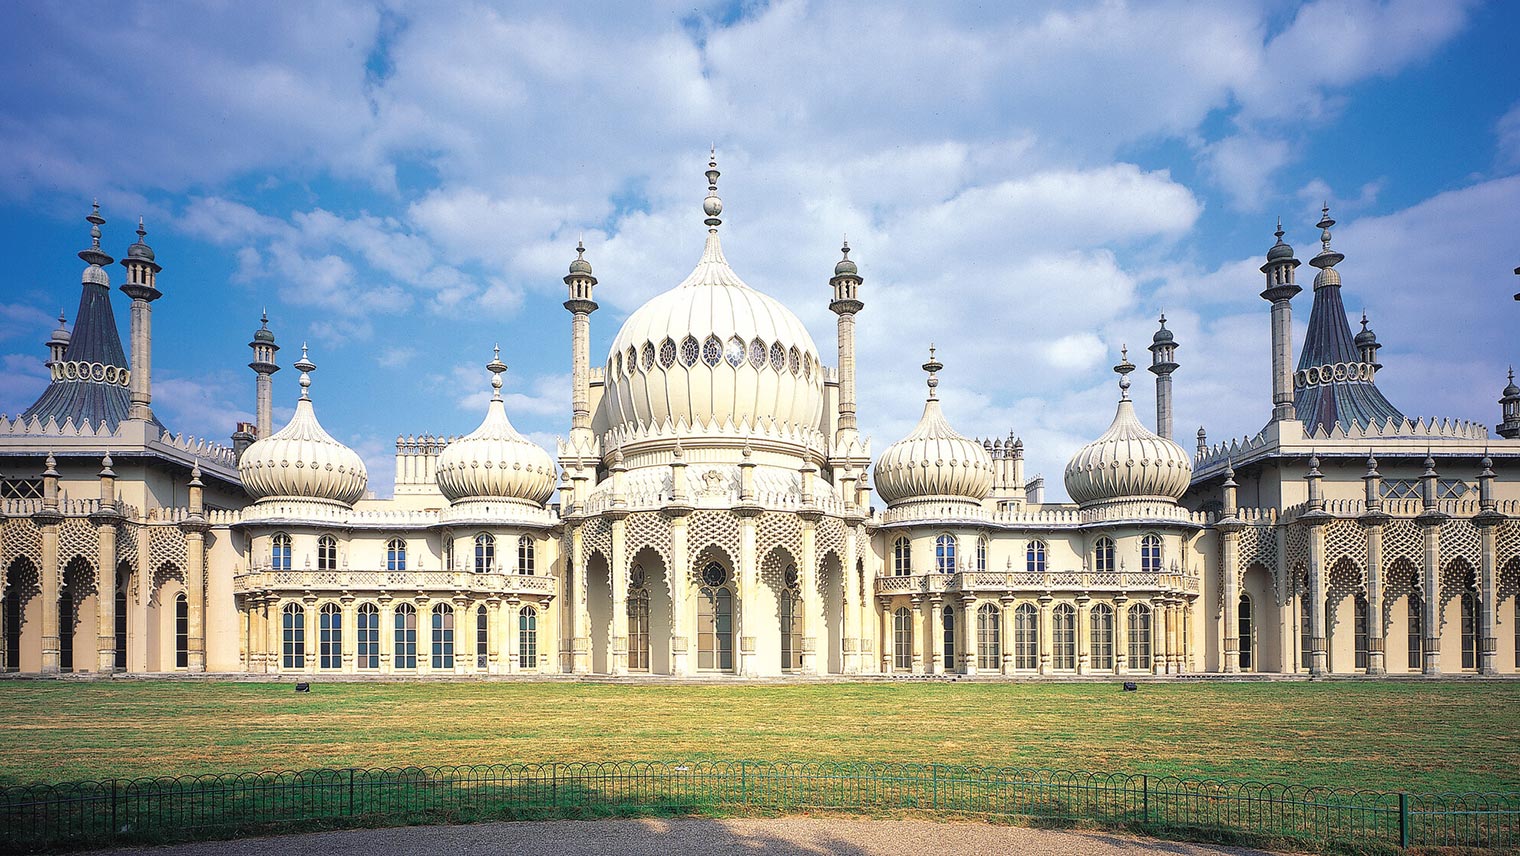 Brighton pavillion